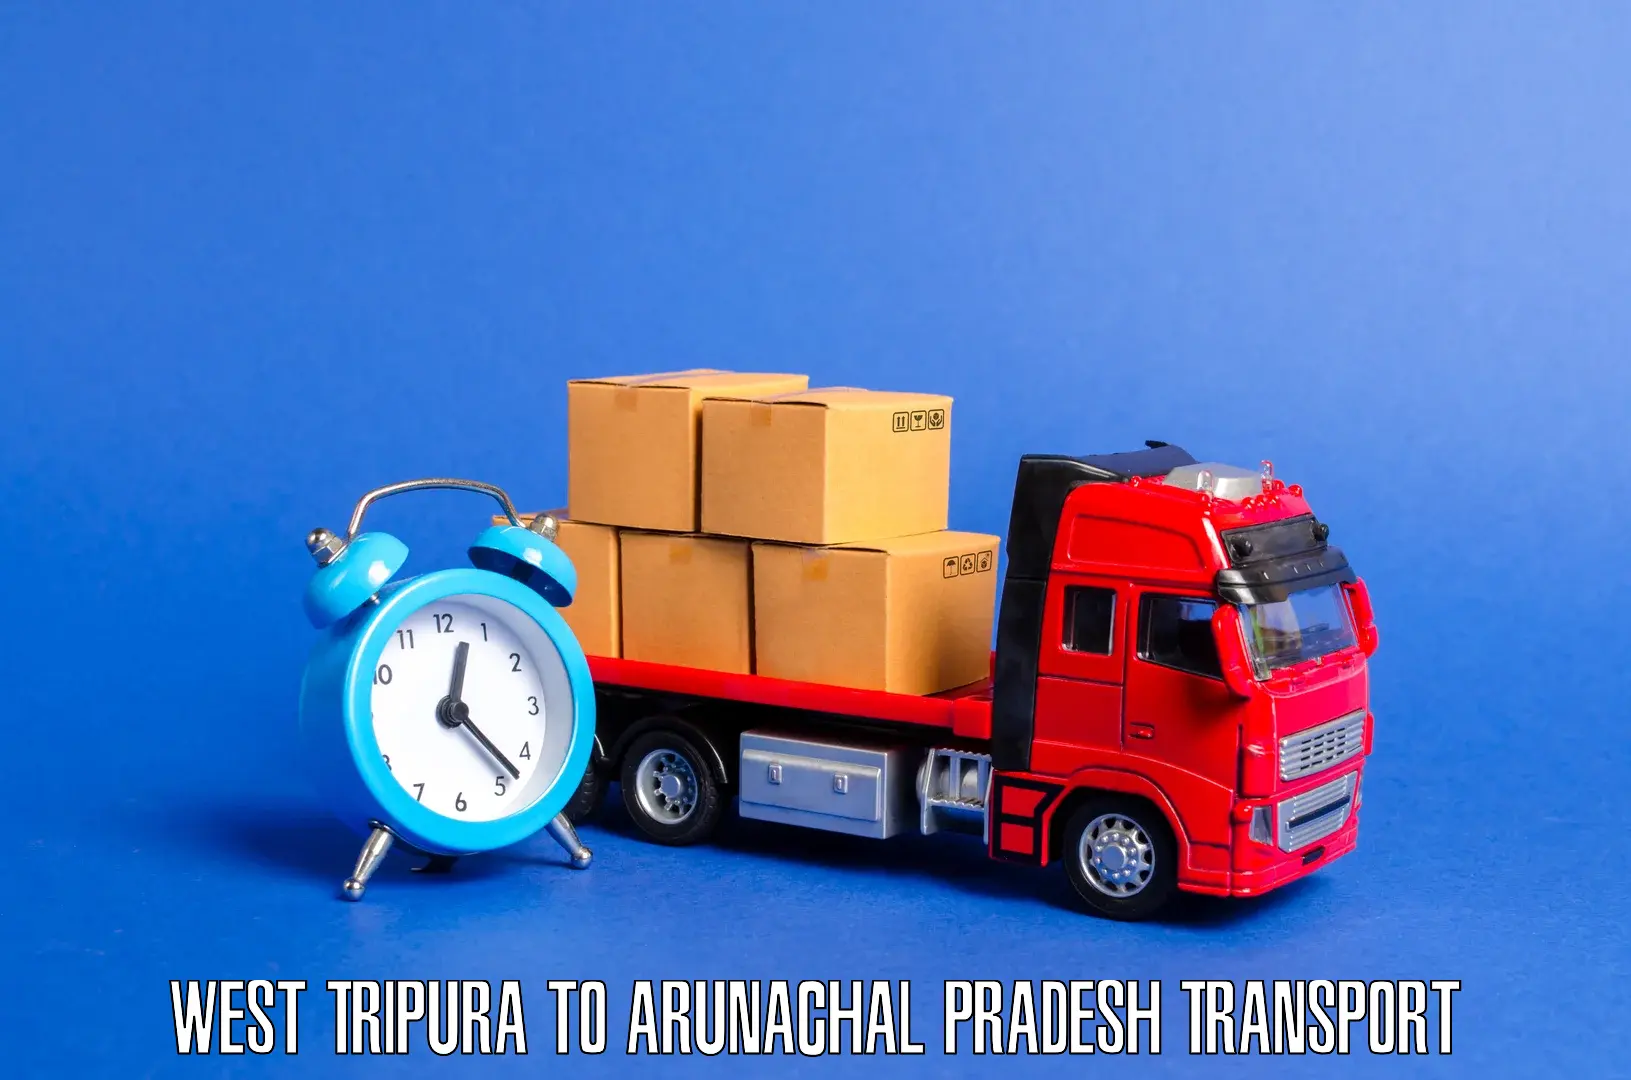 Cargo train transport services West Tripura to Arunachal Pradesh